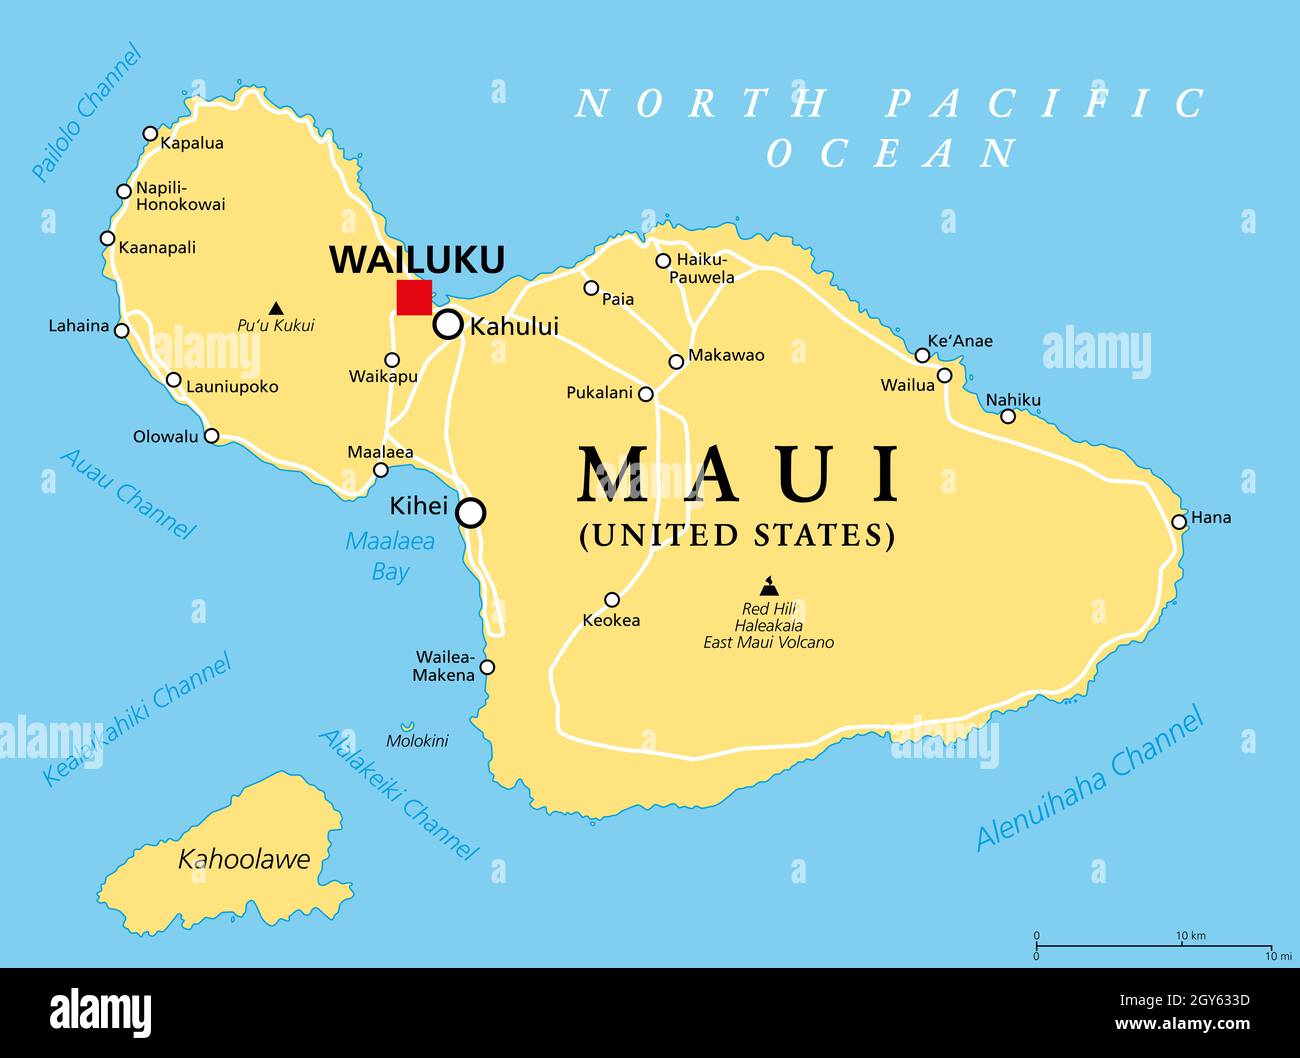 Maui, Hawaii, politische Landkarte mit der Hauptstadt Wailuku. Teil der Hawaiianischen Inseln und Hawaii, einem Bundesstaat der Vereinigten Staaten im Nordpazifik. Stockfoto